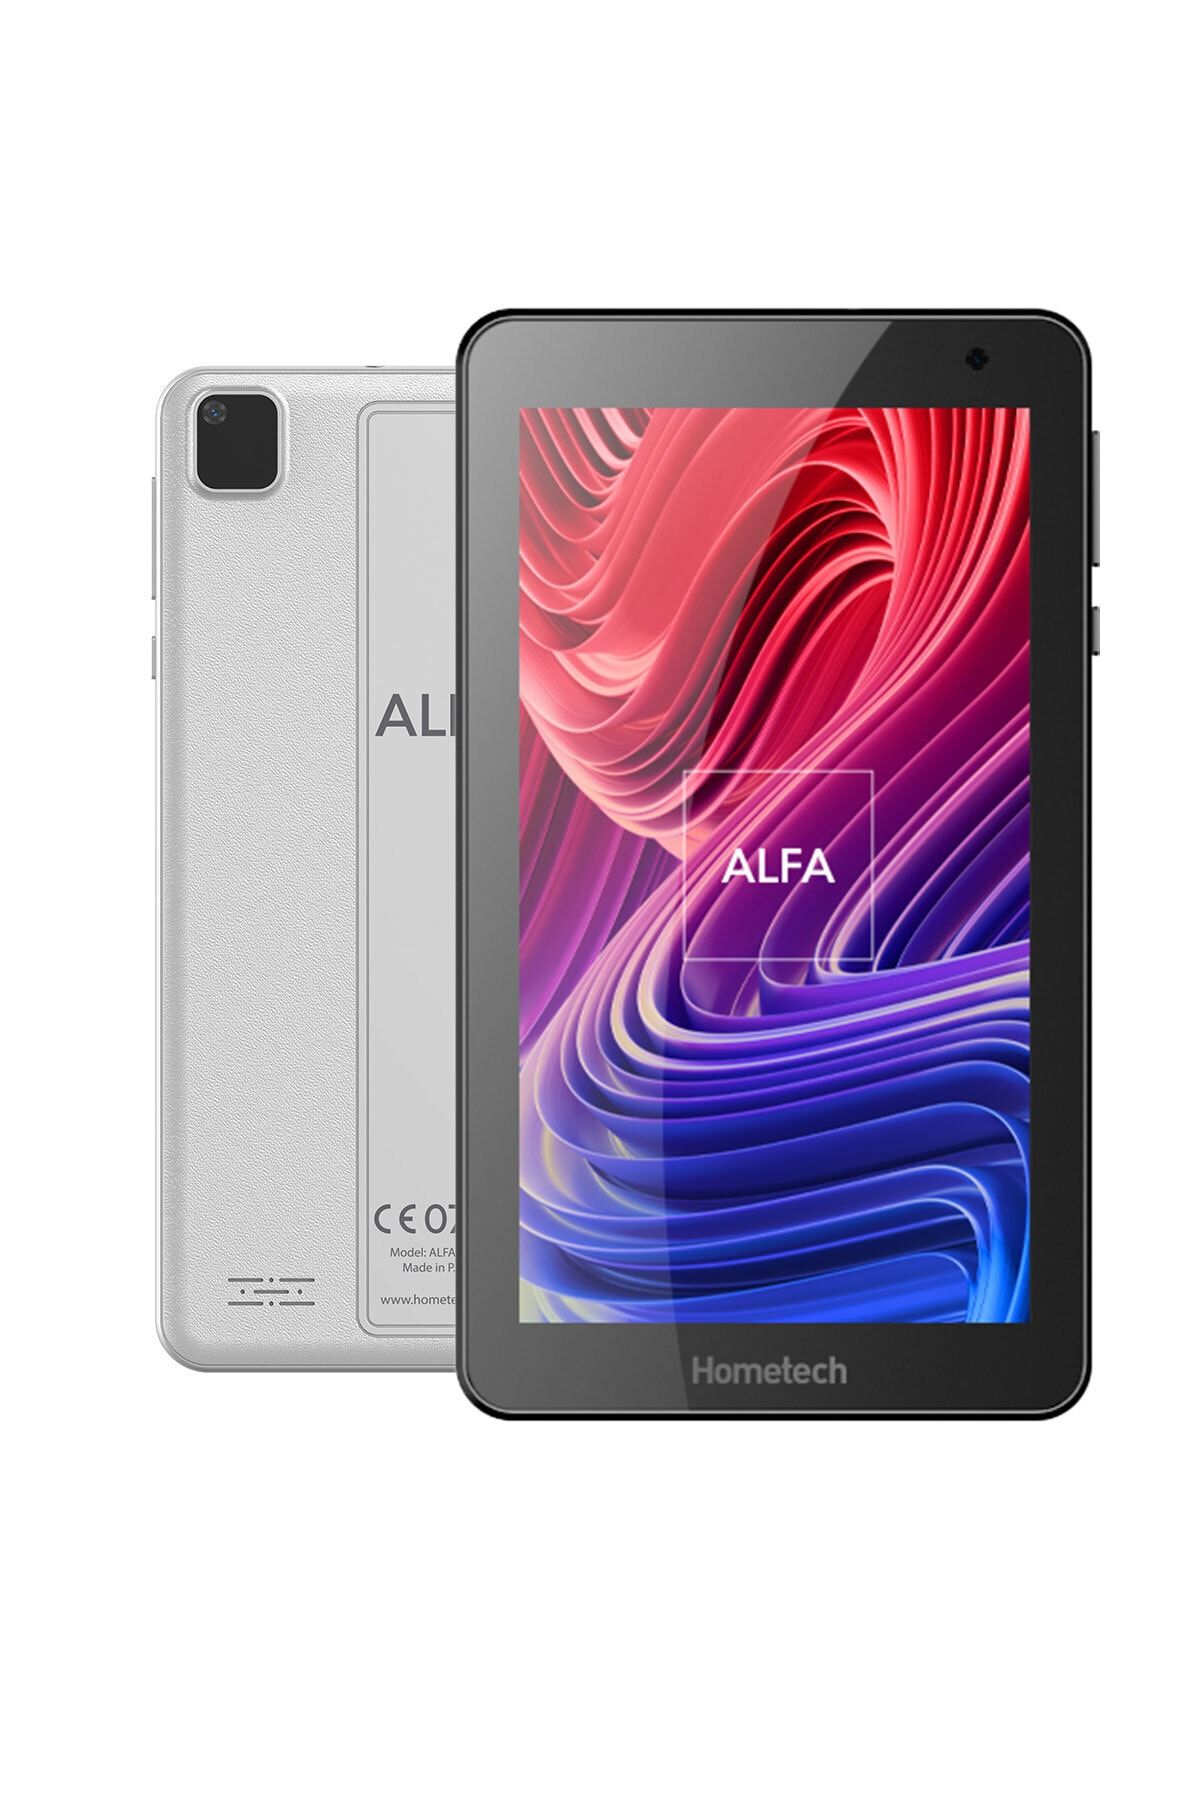 Hometech Alfa 7 Mrc 32gb Tablet